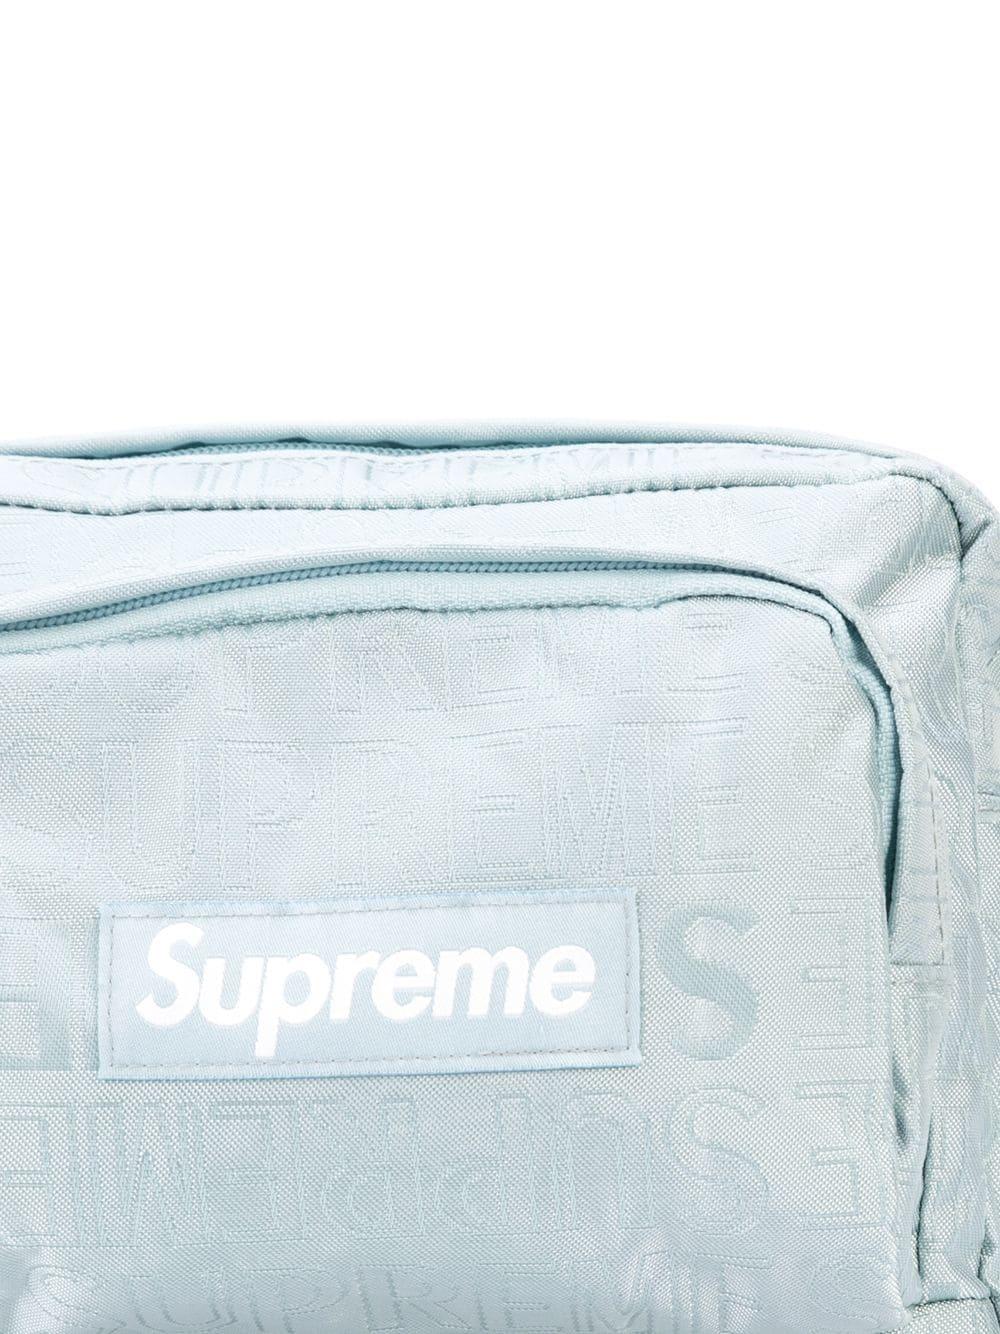 Supreme Logo Print Shoulder Bag